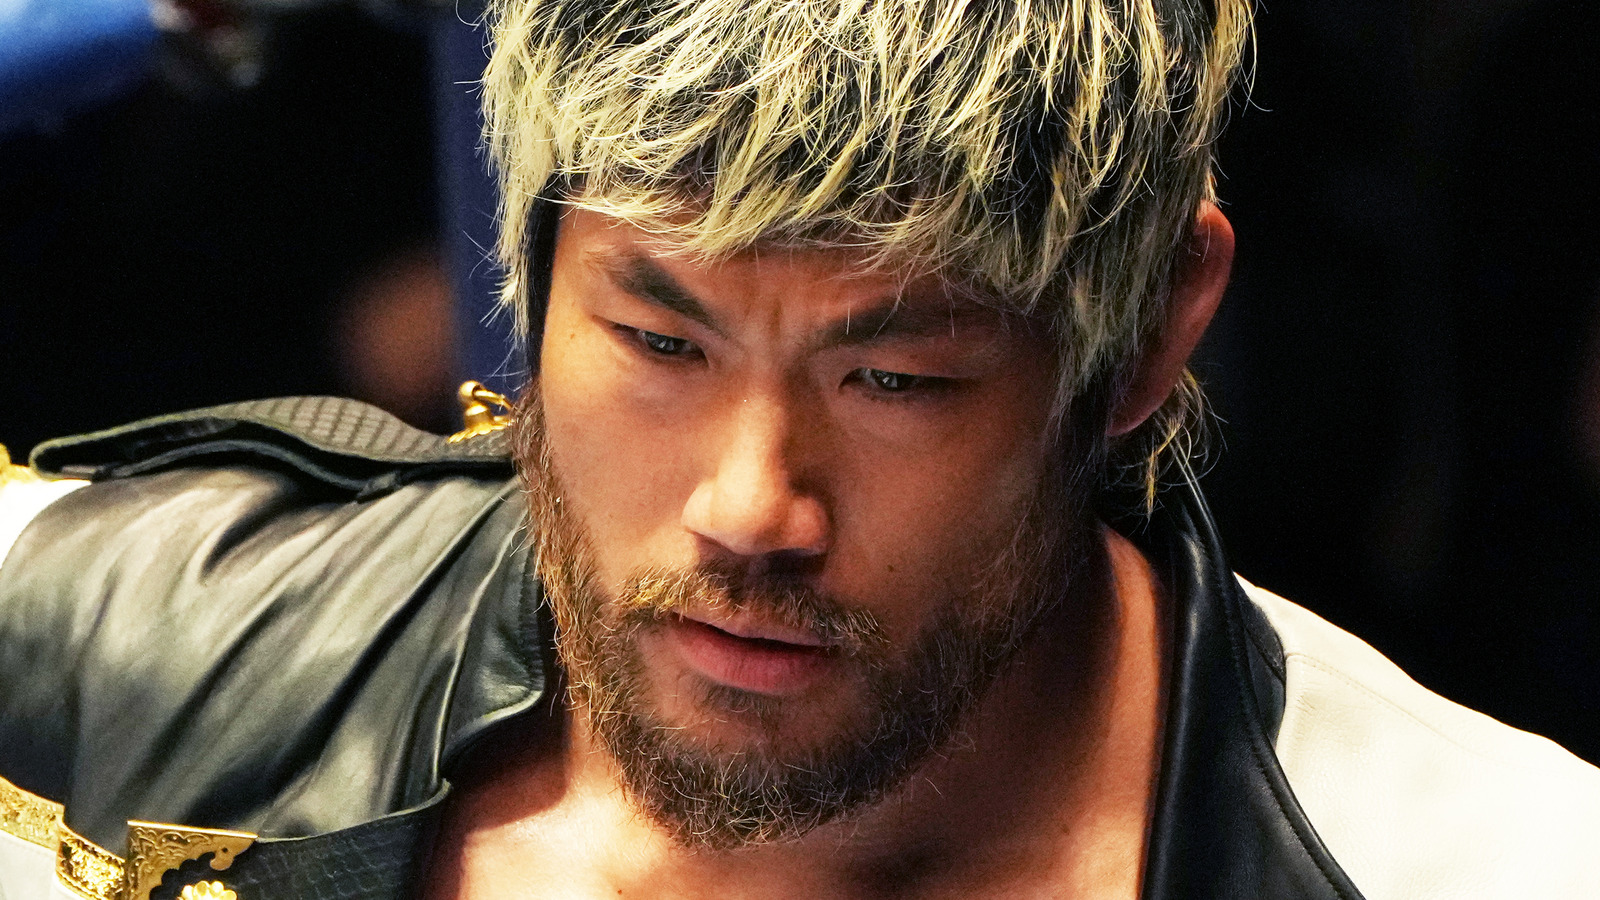 SANADA sintió que nunca podría ser el 'Top Guy' en NJPW si se quedaba en Los Ingobernables de Japón